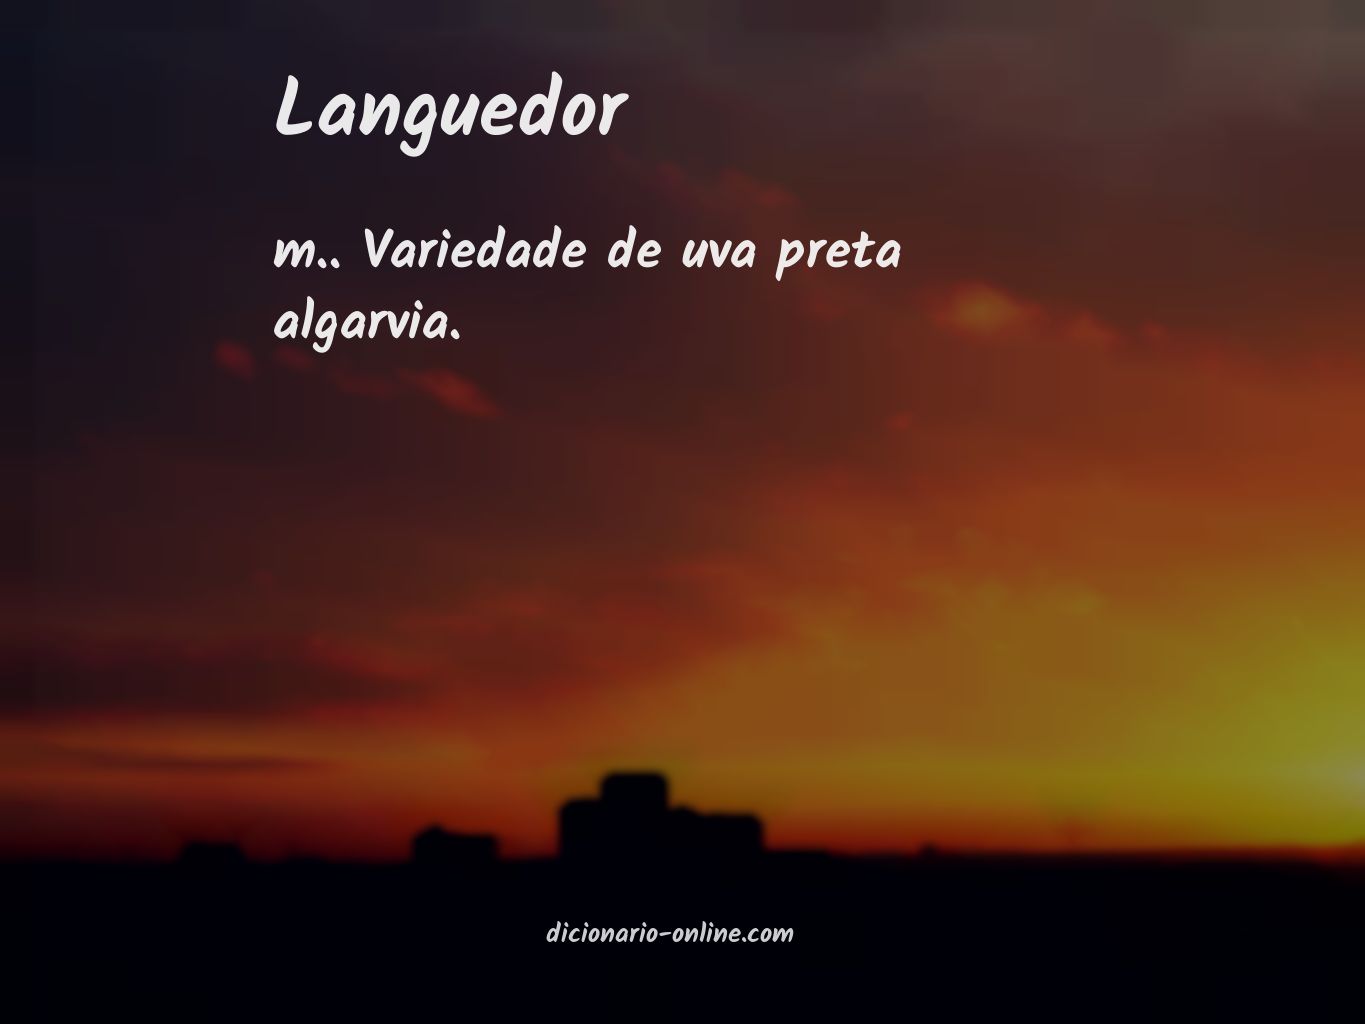 Significado de languedor